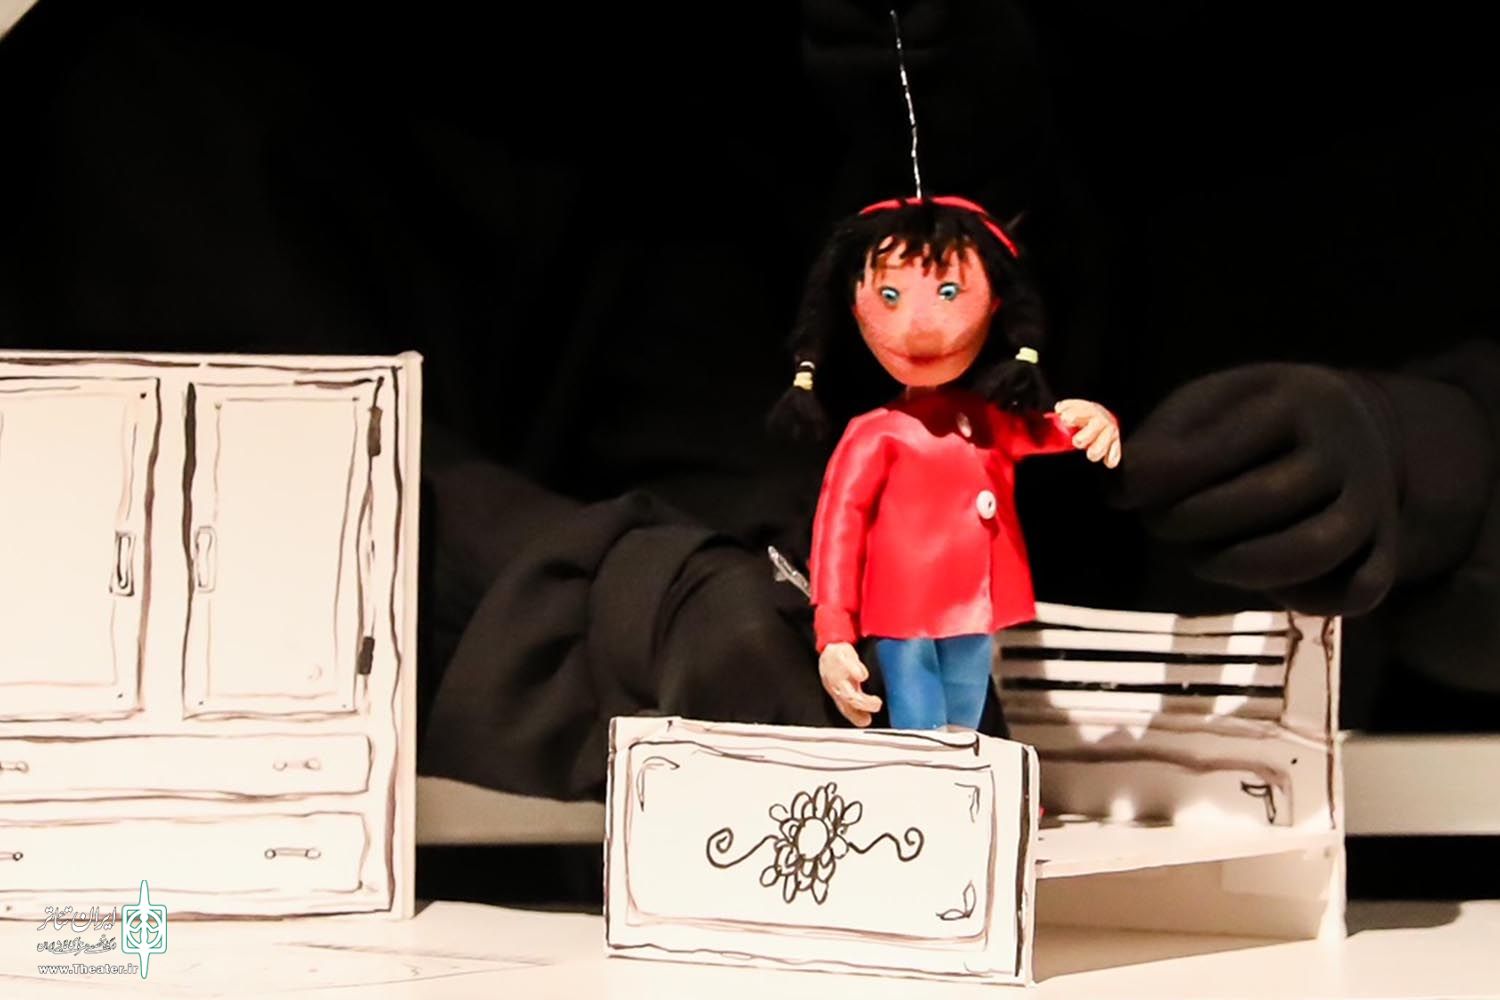 دختر کوچولو در جشنواره بین المللی نمایش عروسکی تهران-مبارک